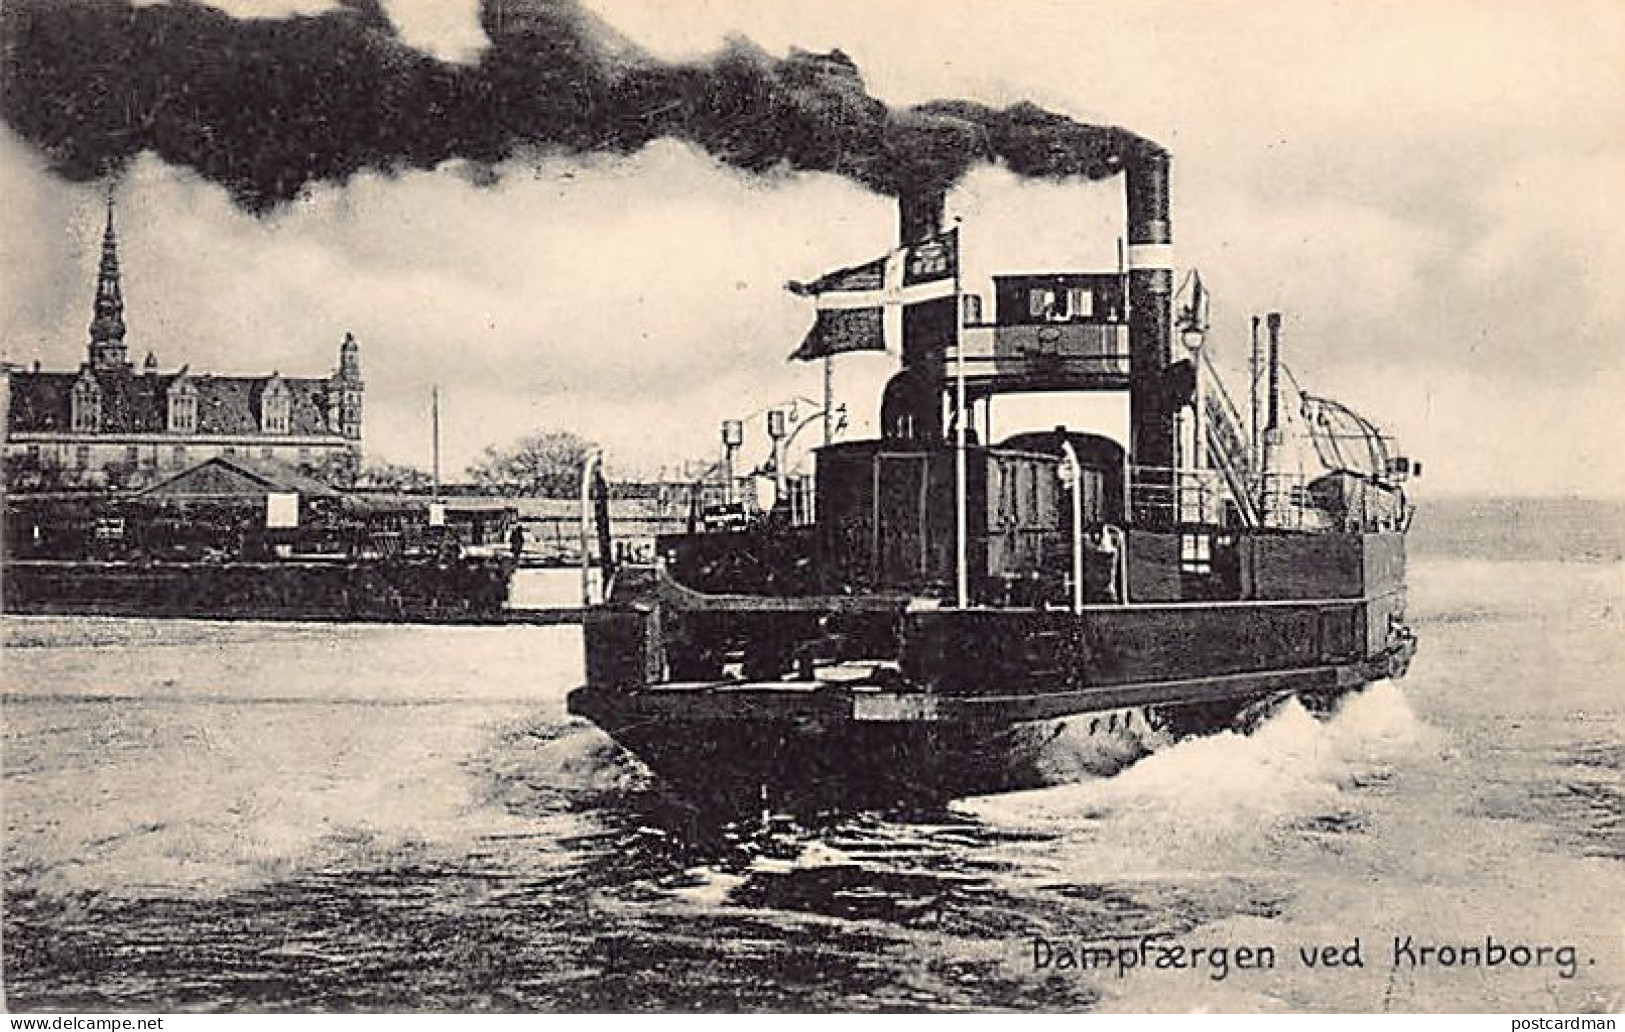 Denmark - HELSINGOR - Dampfaergen Ved Kronborg - Ferry Boat - Publ. Knud Nielsen  - Denmark